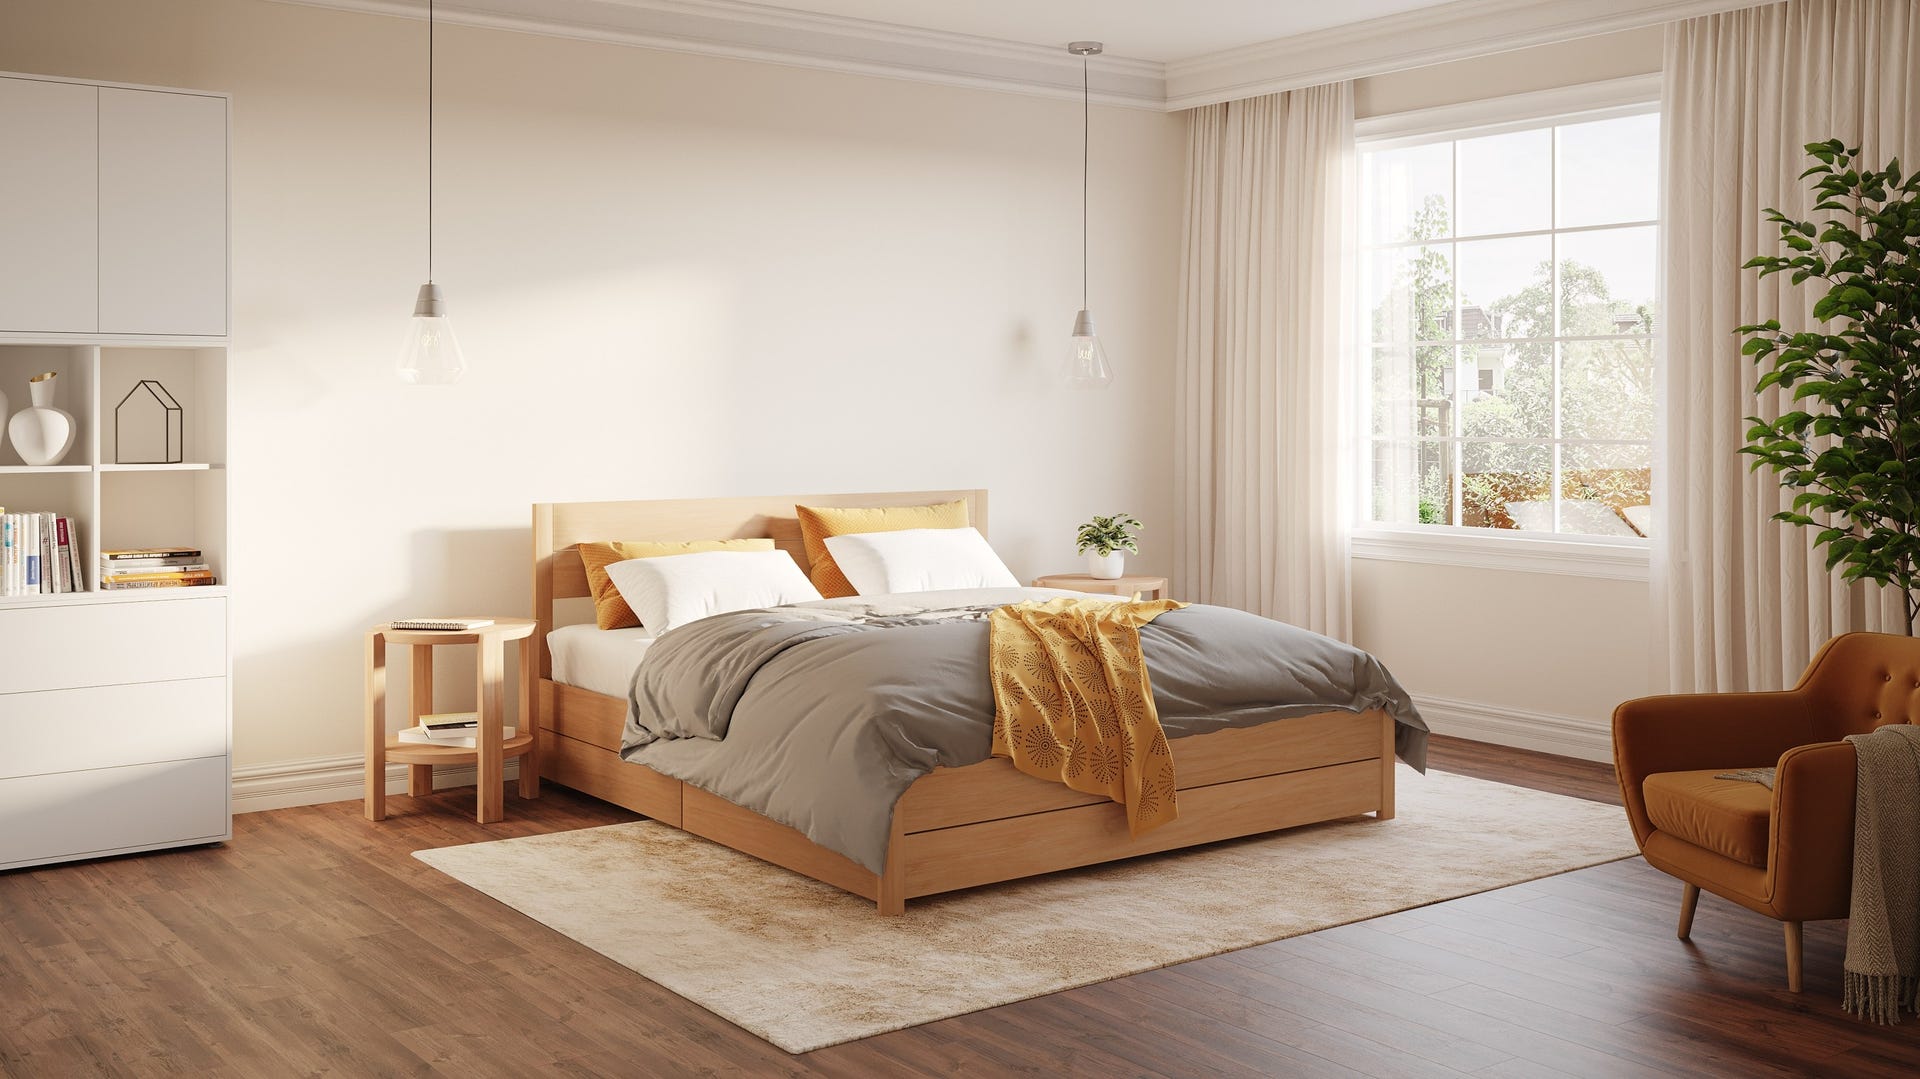 Emma Wooden Bed V2 - Natural design for any room.